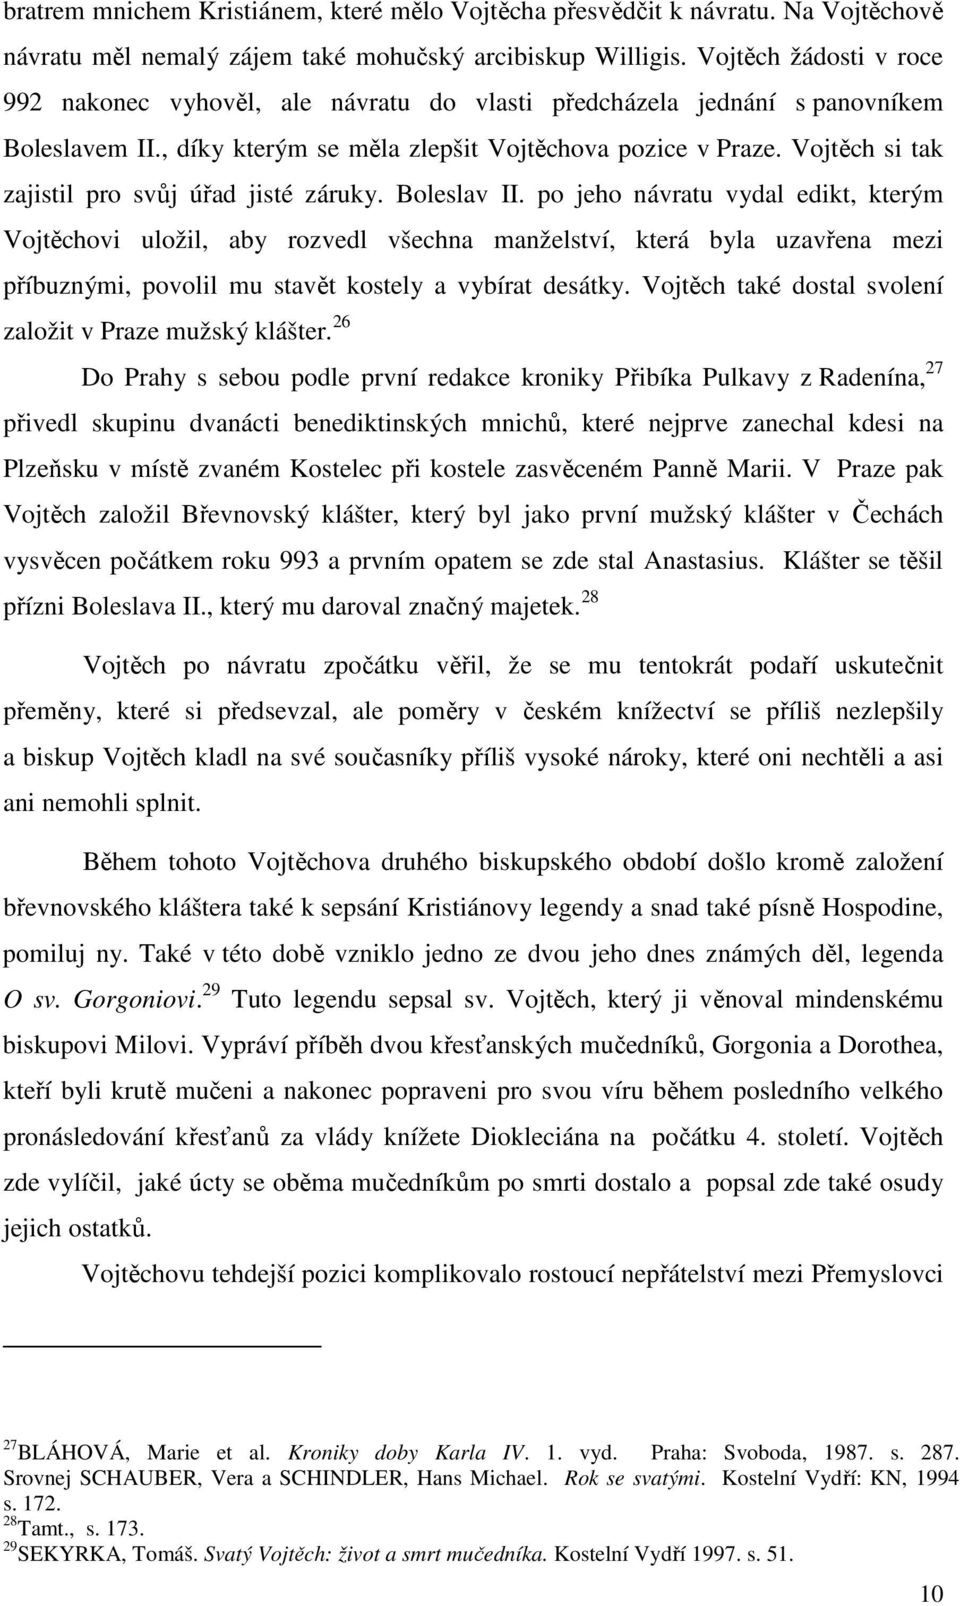 Vojtěch si tak zajistil pro svůj úřad jisté záruky. Boleslav II.